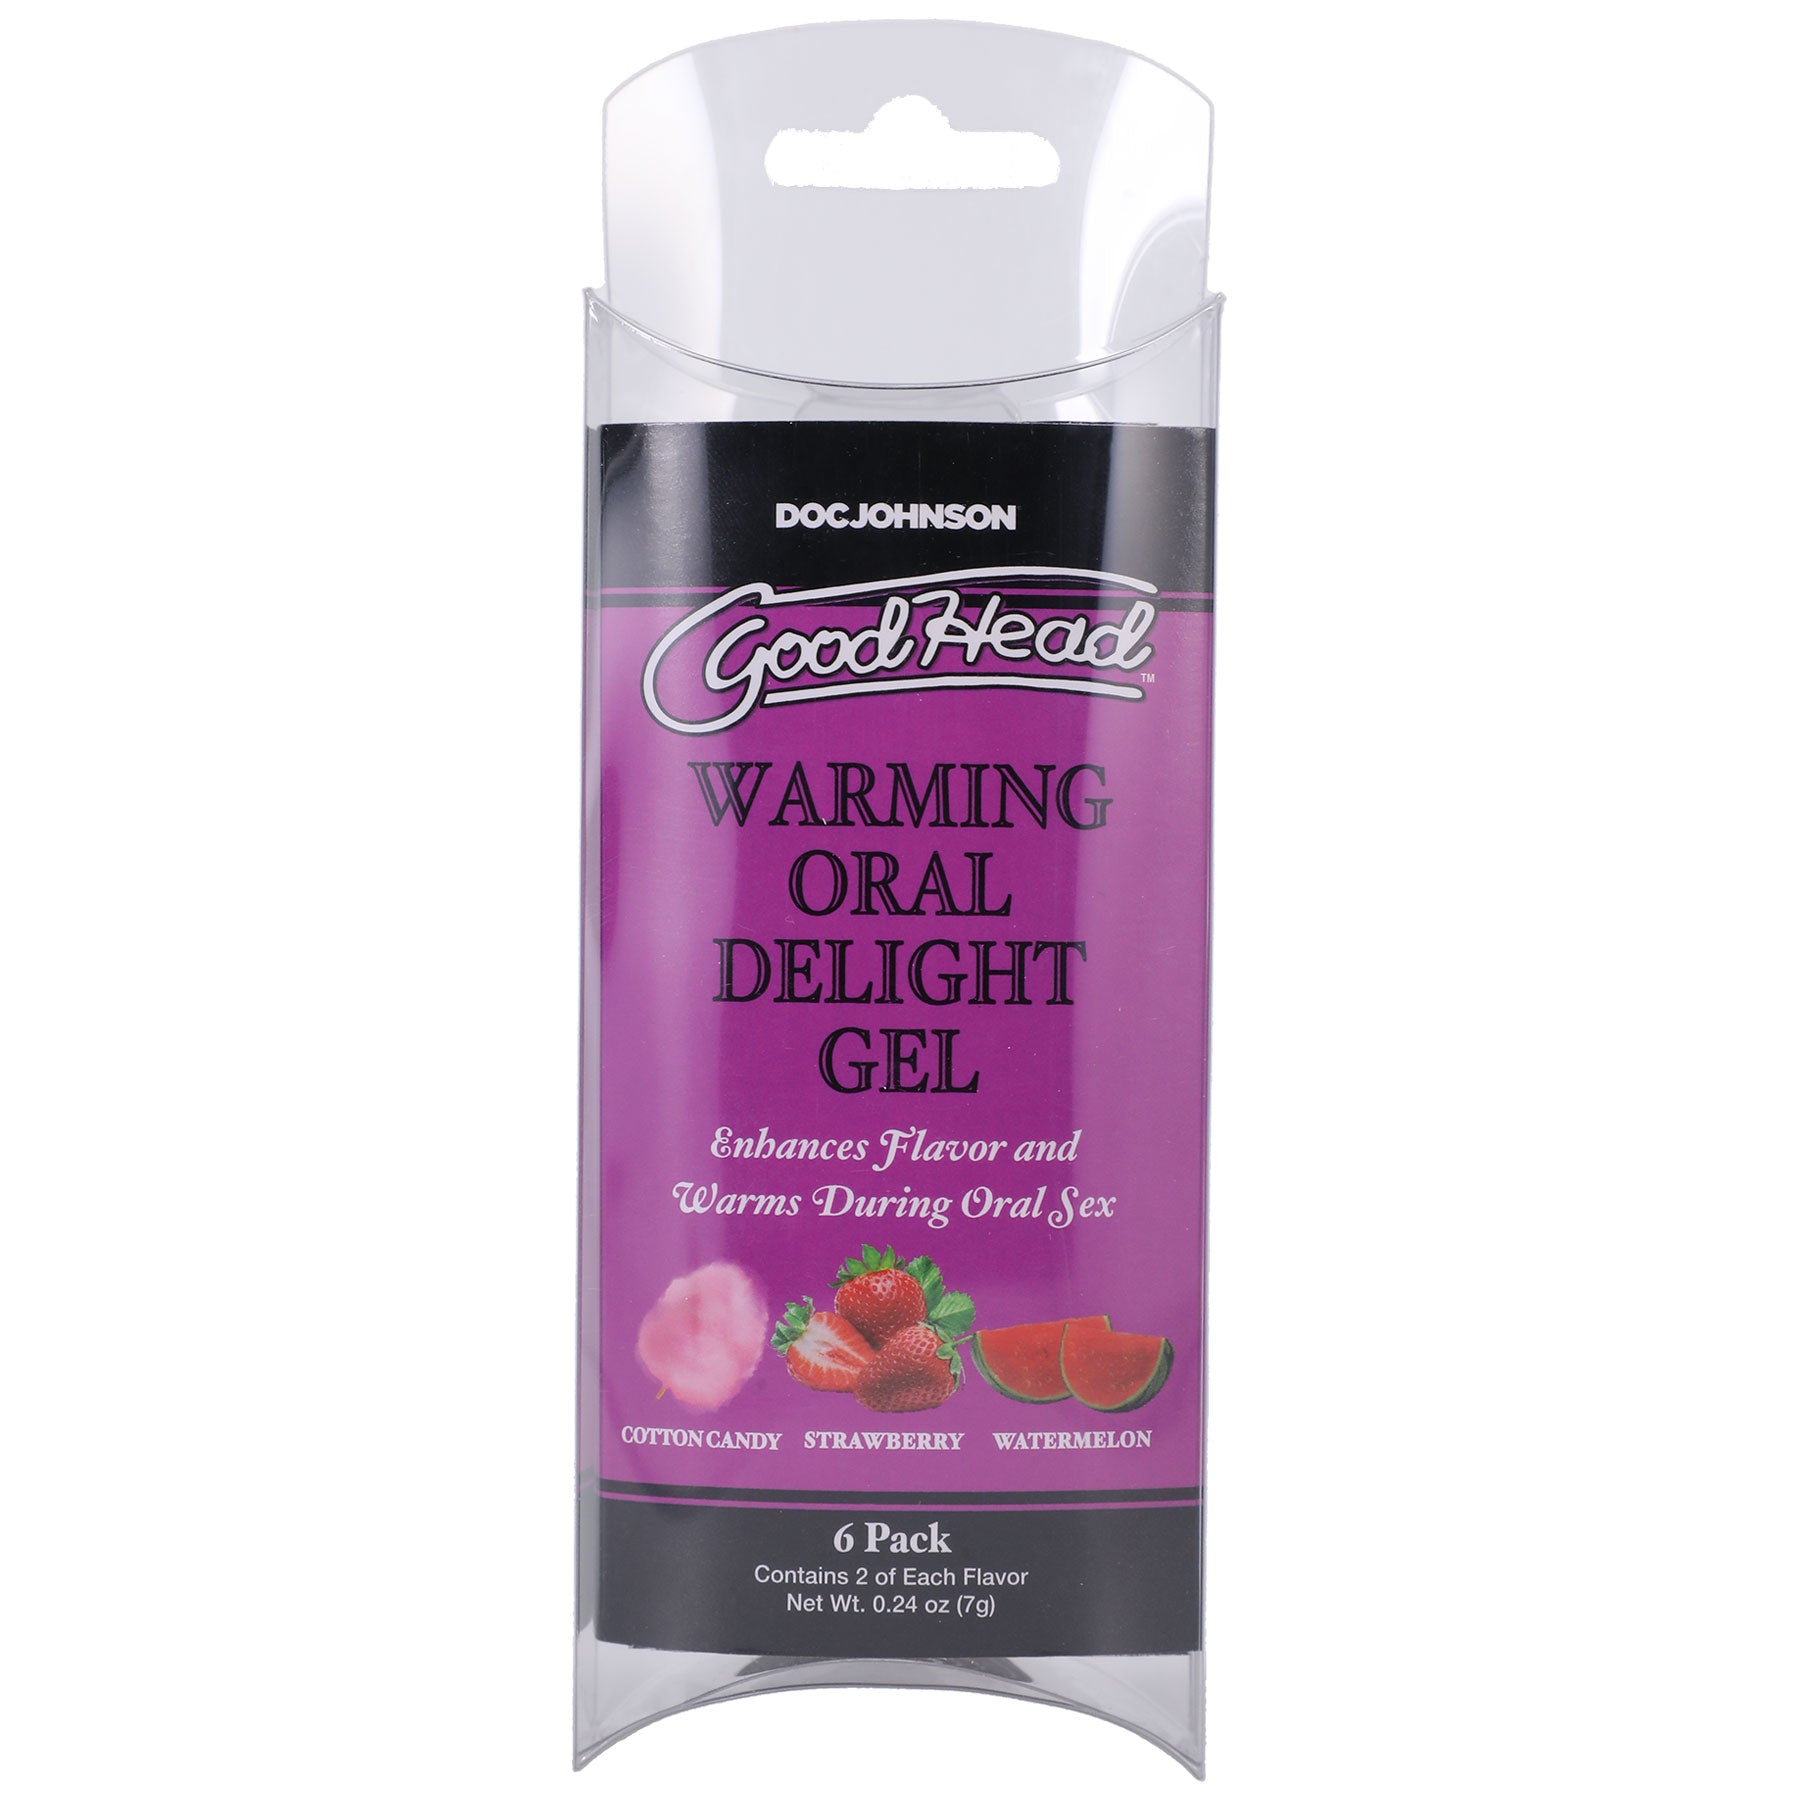 Goodhead - Warming Head Oral Delight Gel - 6 Pack  - 0.24 Oz-1